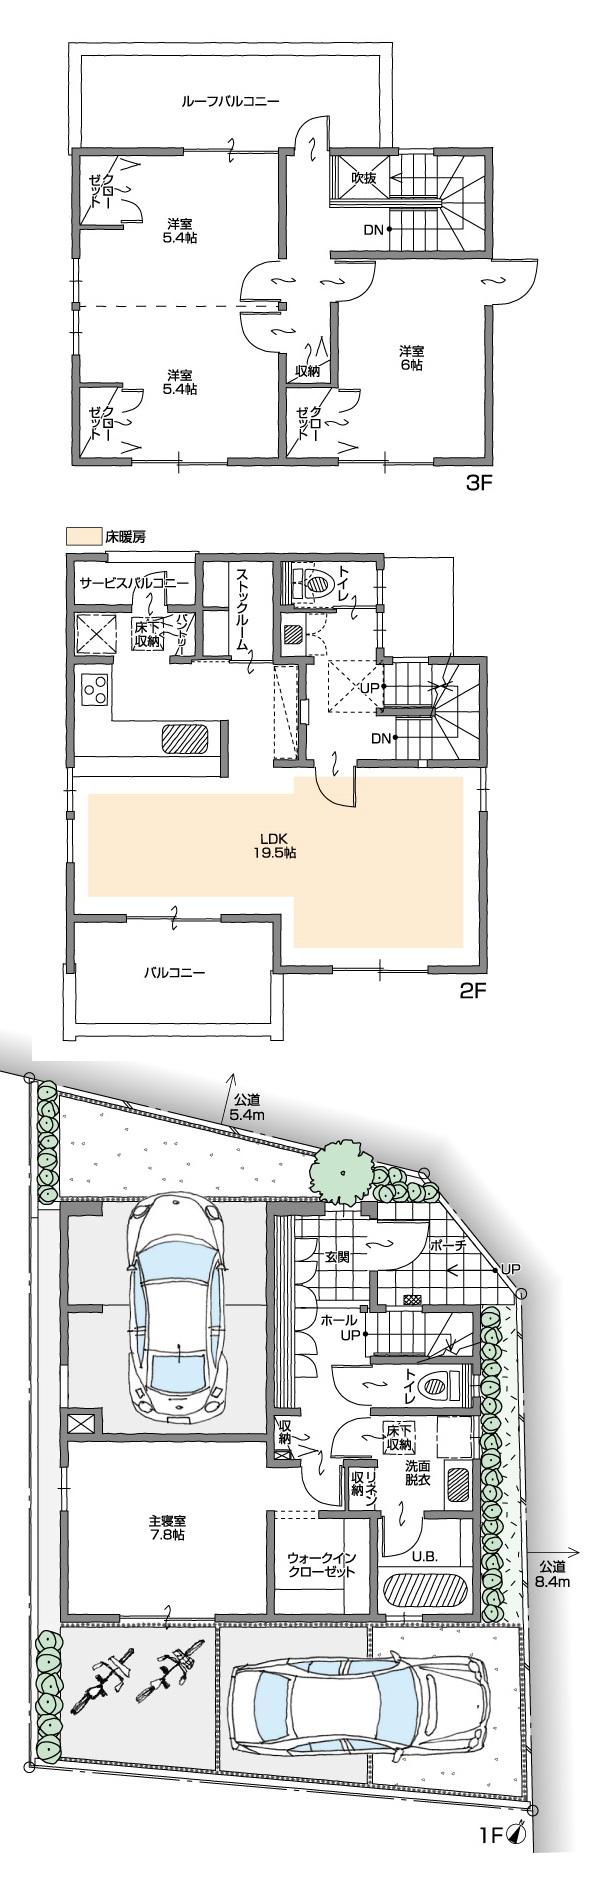 Floor plan. 37,800,000 yen, 4LDK + S (storeroom), Land area 99.18 sq m , Building area 133.59 sq m floor plan